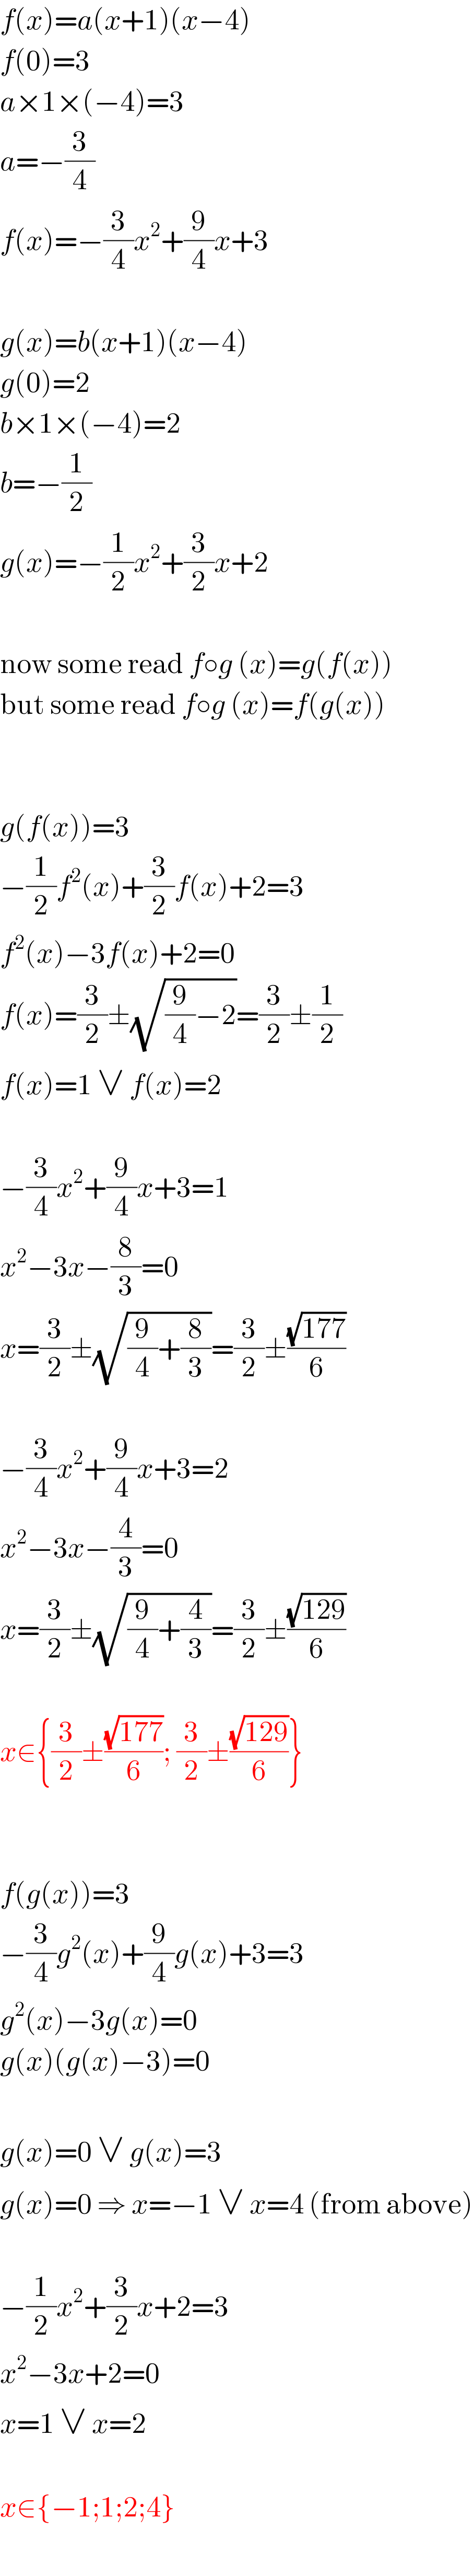 f(x)=a(x+1)(x−4)  f(0)=3  a×1×(−4)=3  a=−(3/4)  f(x)=−(3/4)x^2 +(9/4)x+3    g(x)=b(x+1)(x−4)  g(0)=2  b×1×(−4)=2  b=−(1/2)  g(x)=−(1/2)x^2 +(3/2)x+2    now some read f○g (x)=g(f(x))  but some read f○g (x)=f(g(x))      g(f(x))=3  −(1/2)f^2 (x)+(3/2)f(x)+2=3  f^2 (x)−3f(x)+2=0  f(x)=(3/2)±(√((9/4)−2))=(3/2)±(1/2)  f(x)=1 ∨ f(x)=2    −(3/4)x^2 +(9/4)x+3=1  x^2 −3x−(8/3)=0  x=(3/2)±(√((9/4)+(8/3)))=(3/2)±((√(177))/6)    −(3/4)x^2 +(9/4)x+3=2  x^2 −3x−(4/3)=0  x=(3/2)±(√((9/4)+(4/3)))=(3/2)±((√(129))/6)    x∈{(3/2)±((√(177))/6); (3/2)±((√(129))/6)}      f(g(x))=3  −(3/4)g^2 (x)+(9/4)g(x)+3=3  g^2 (x)−3g(x)=0  g(x)(g(x)−3)=0    g(x)=0 ∨ g(x)=3  g(x)=0 ⇒ x=−1 ∨ x=4 (from above)    −(1/2)x^2 +(3/2)x+2=3  x^2 −3x+2=0  x=1 ∨ x=2    x∈{−1;1;2;4}  